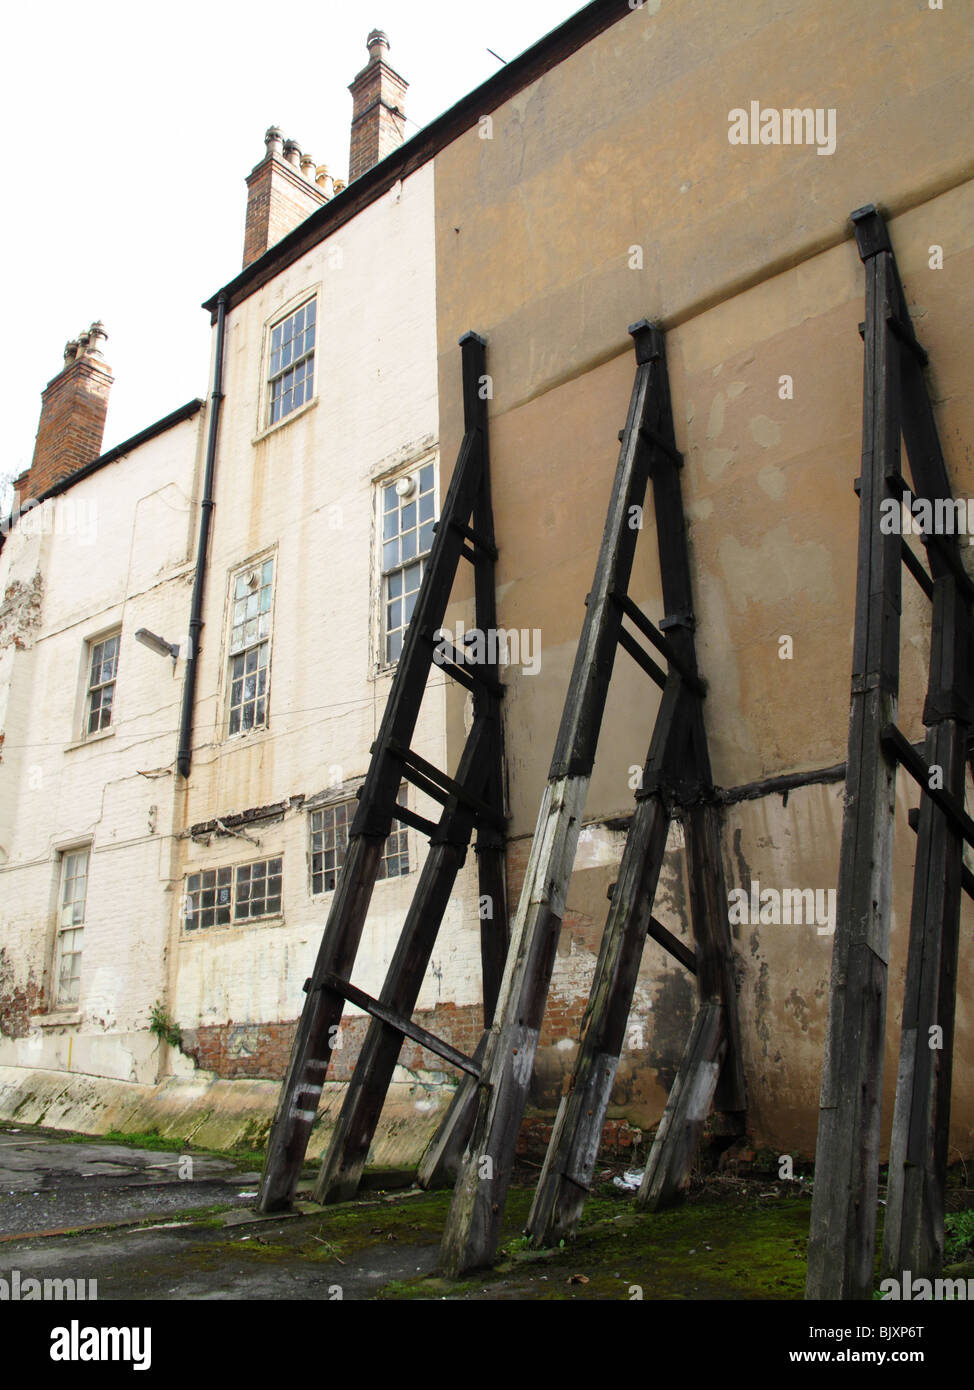 Supporti strutturali su un vecchio edificio in una città del Regno Unito. Foto Stock